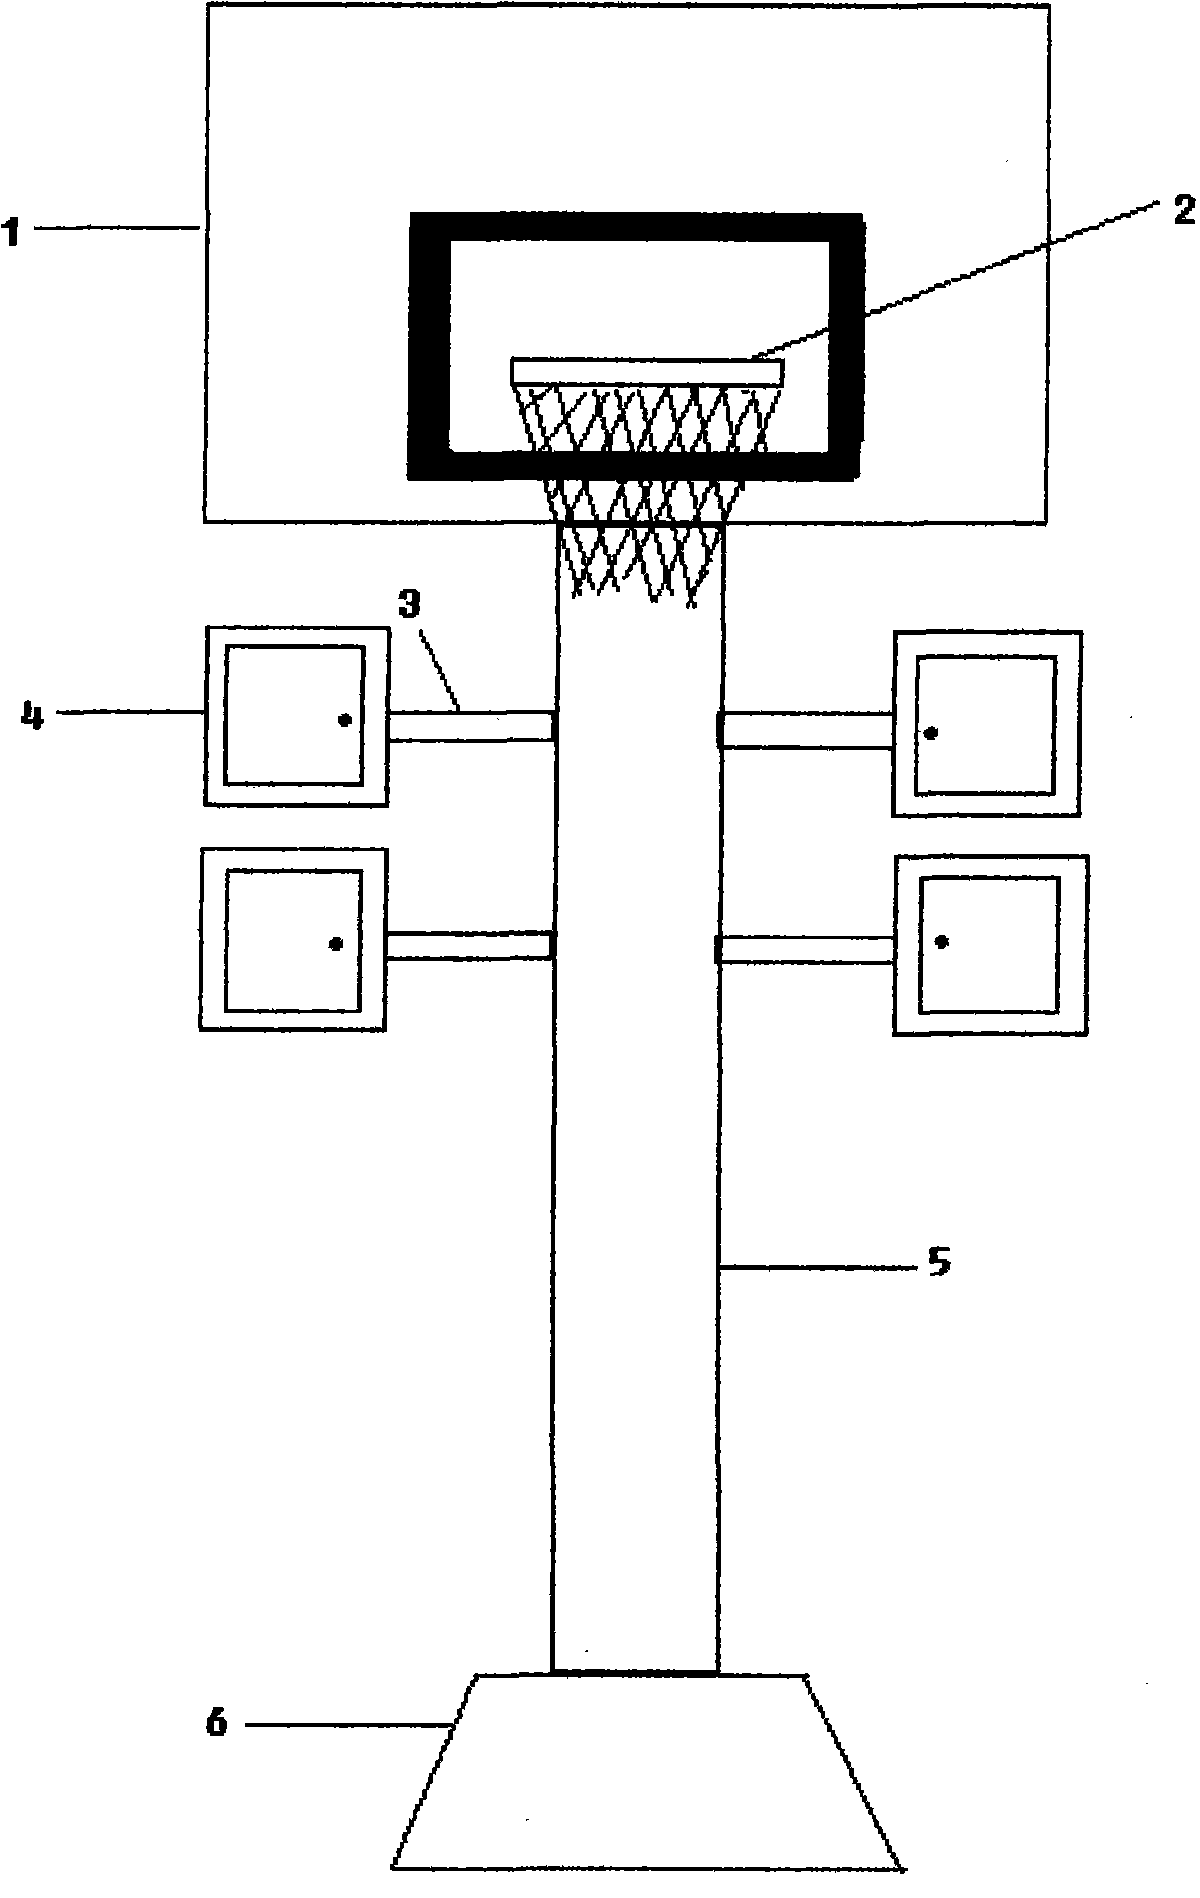 Novel basketball stand